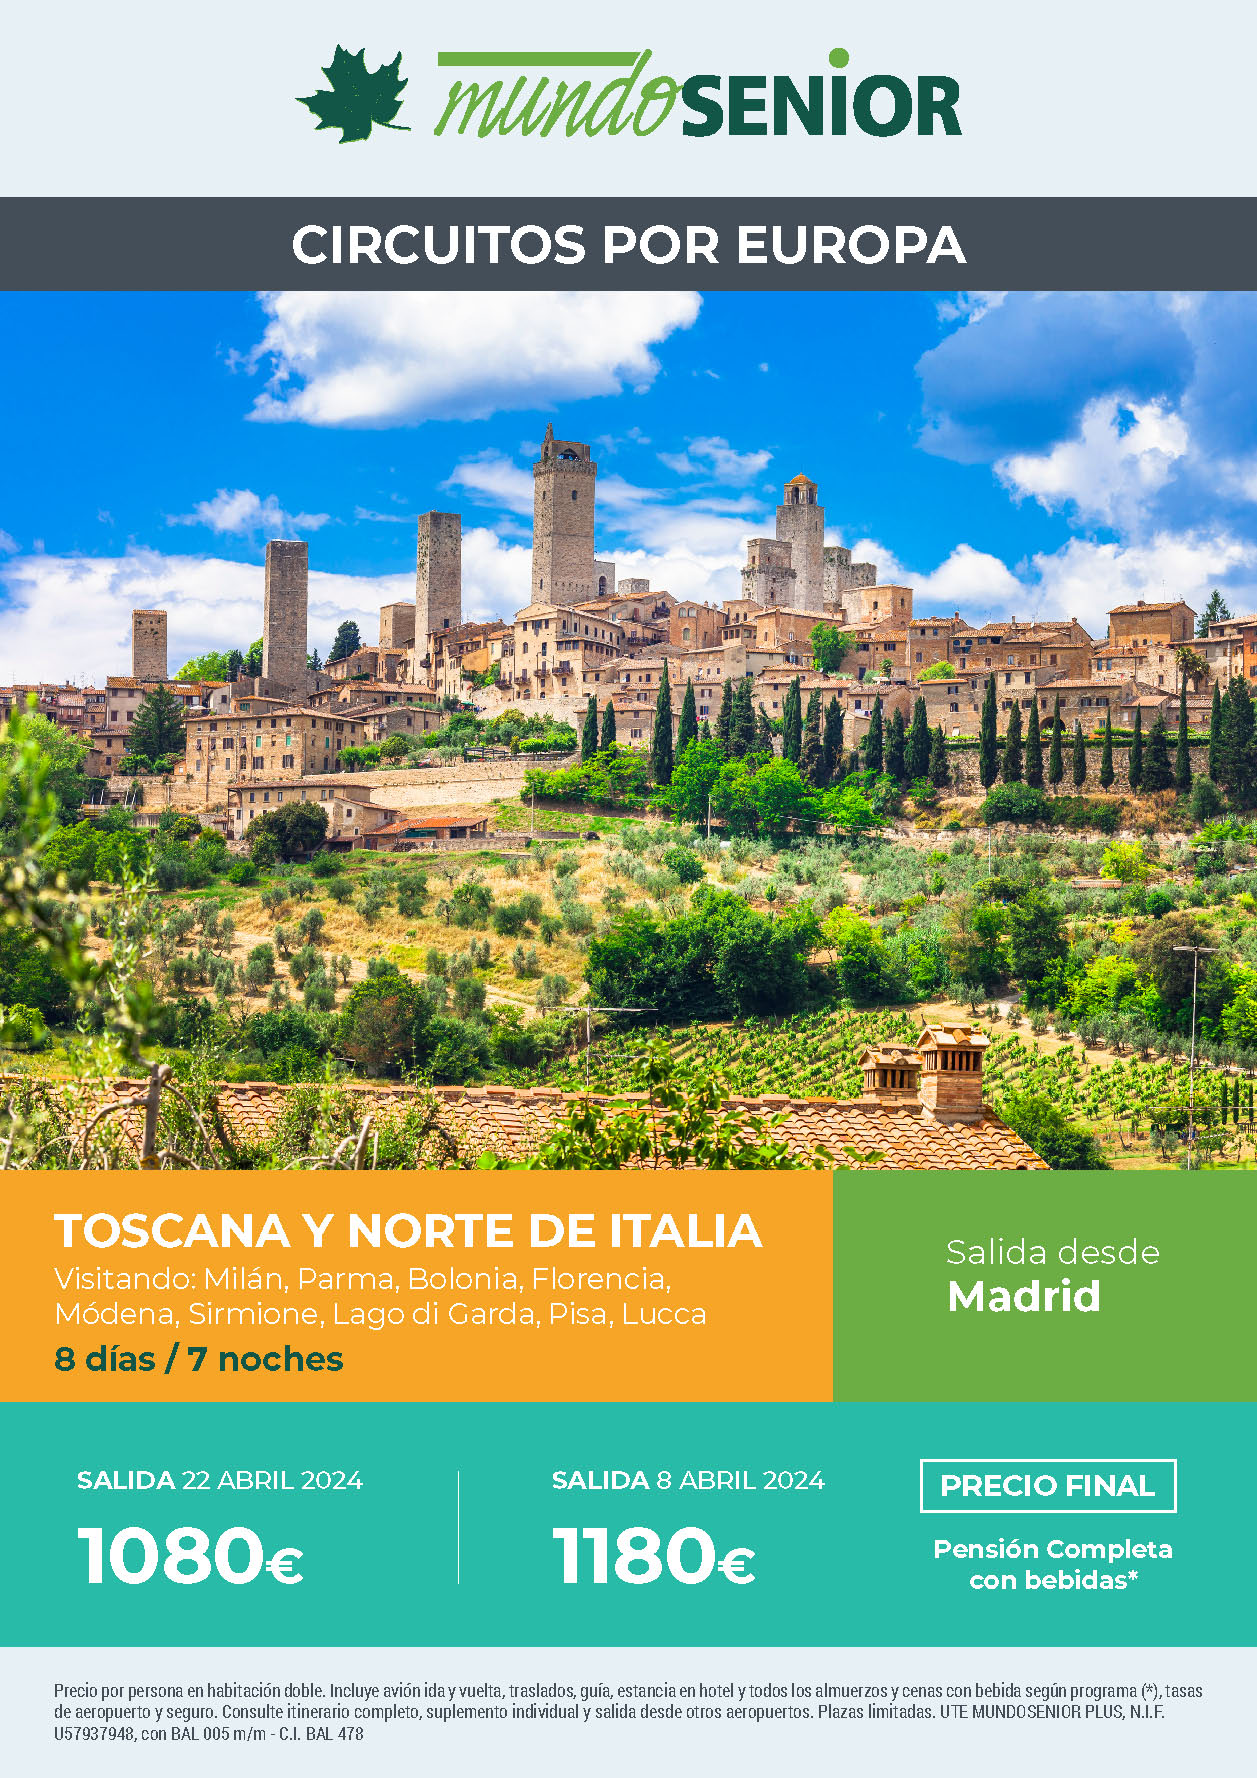 Oferta Mundo Senior circuito Toscana y Norte de Italia Pension Completa 8 dias salidas abril 2024 en vuelo directo desde Madrid